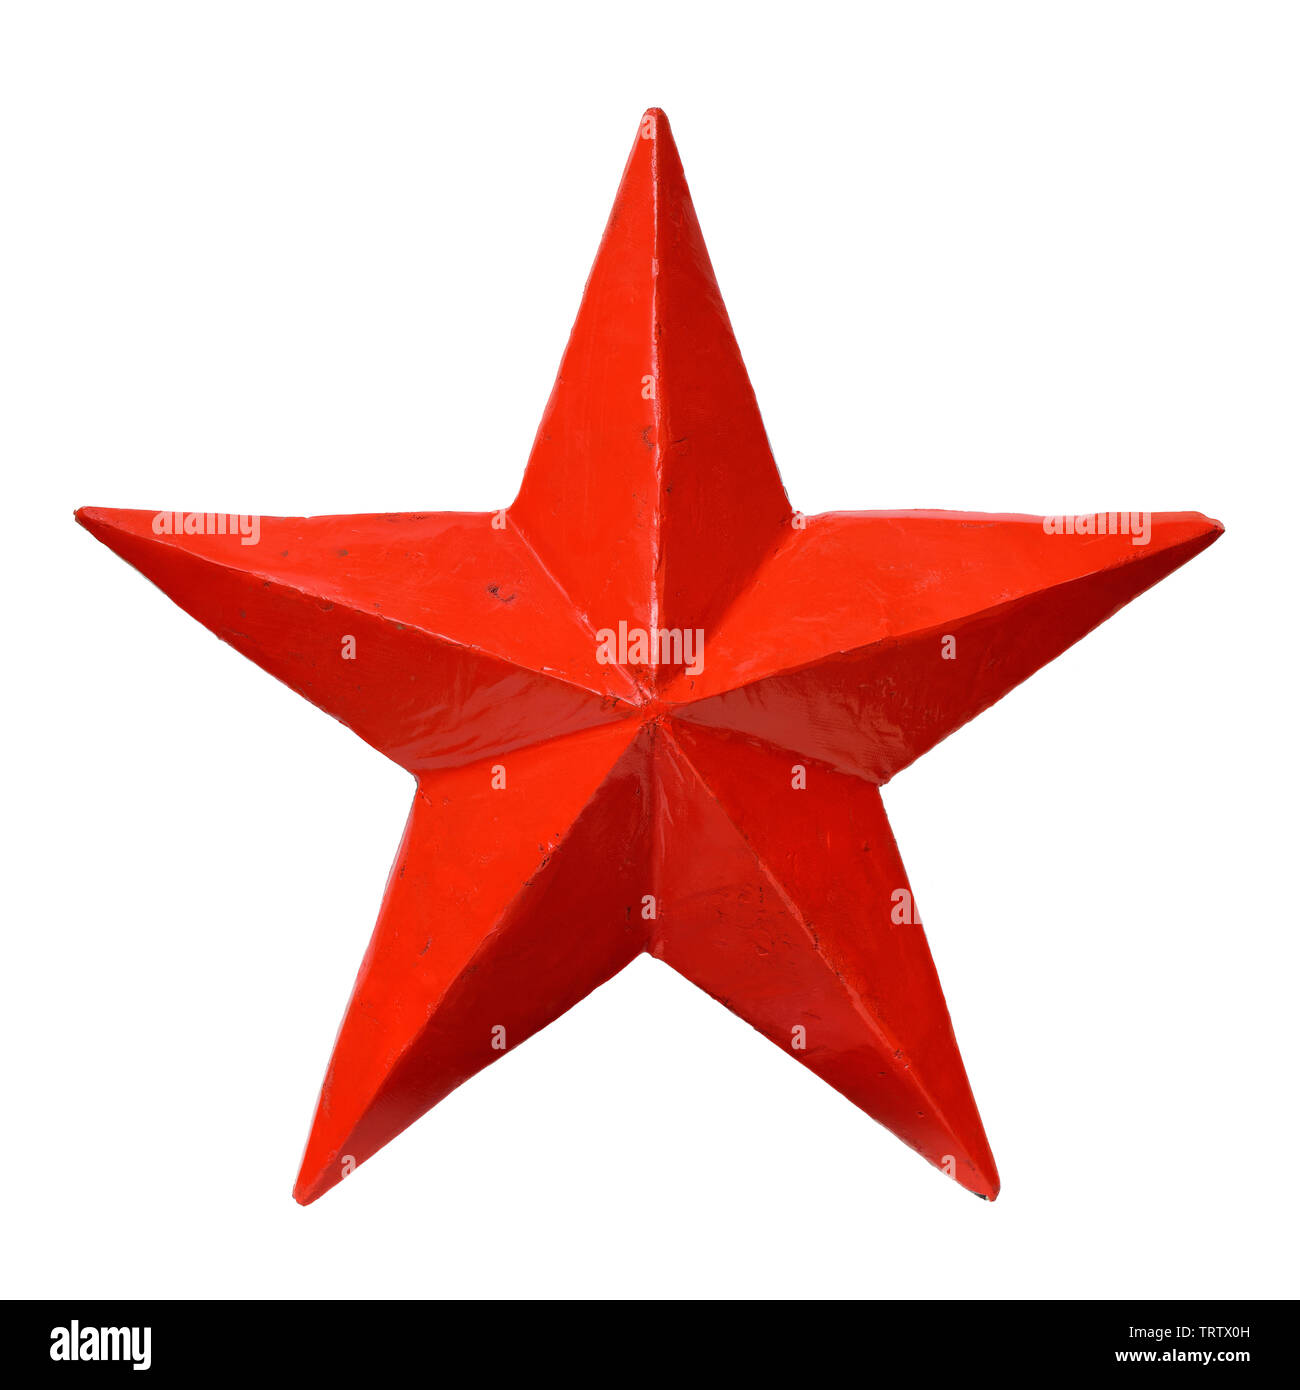 Oggetti isolati: rossa stella a cinque punte, su sfondo bianco Foto Stock